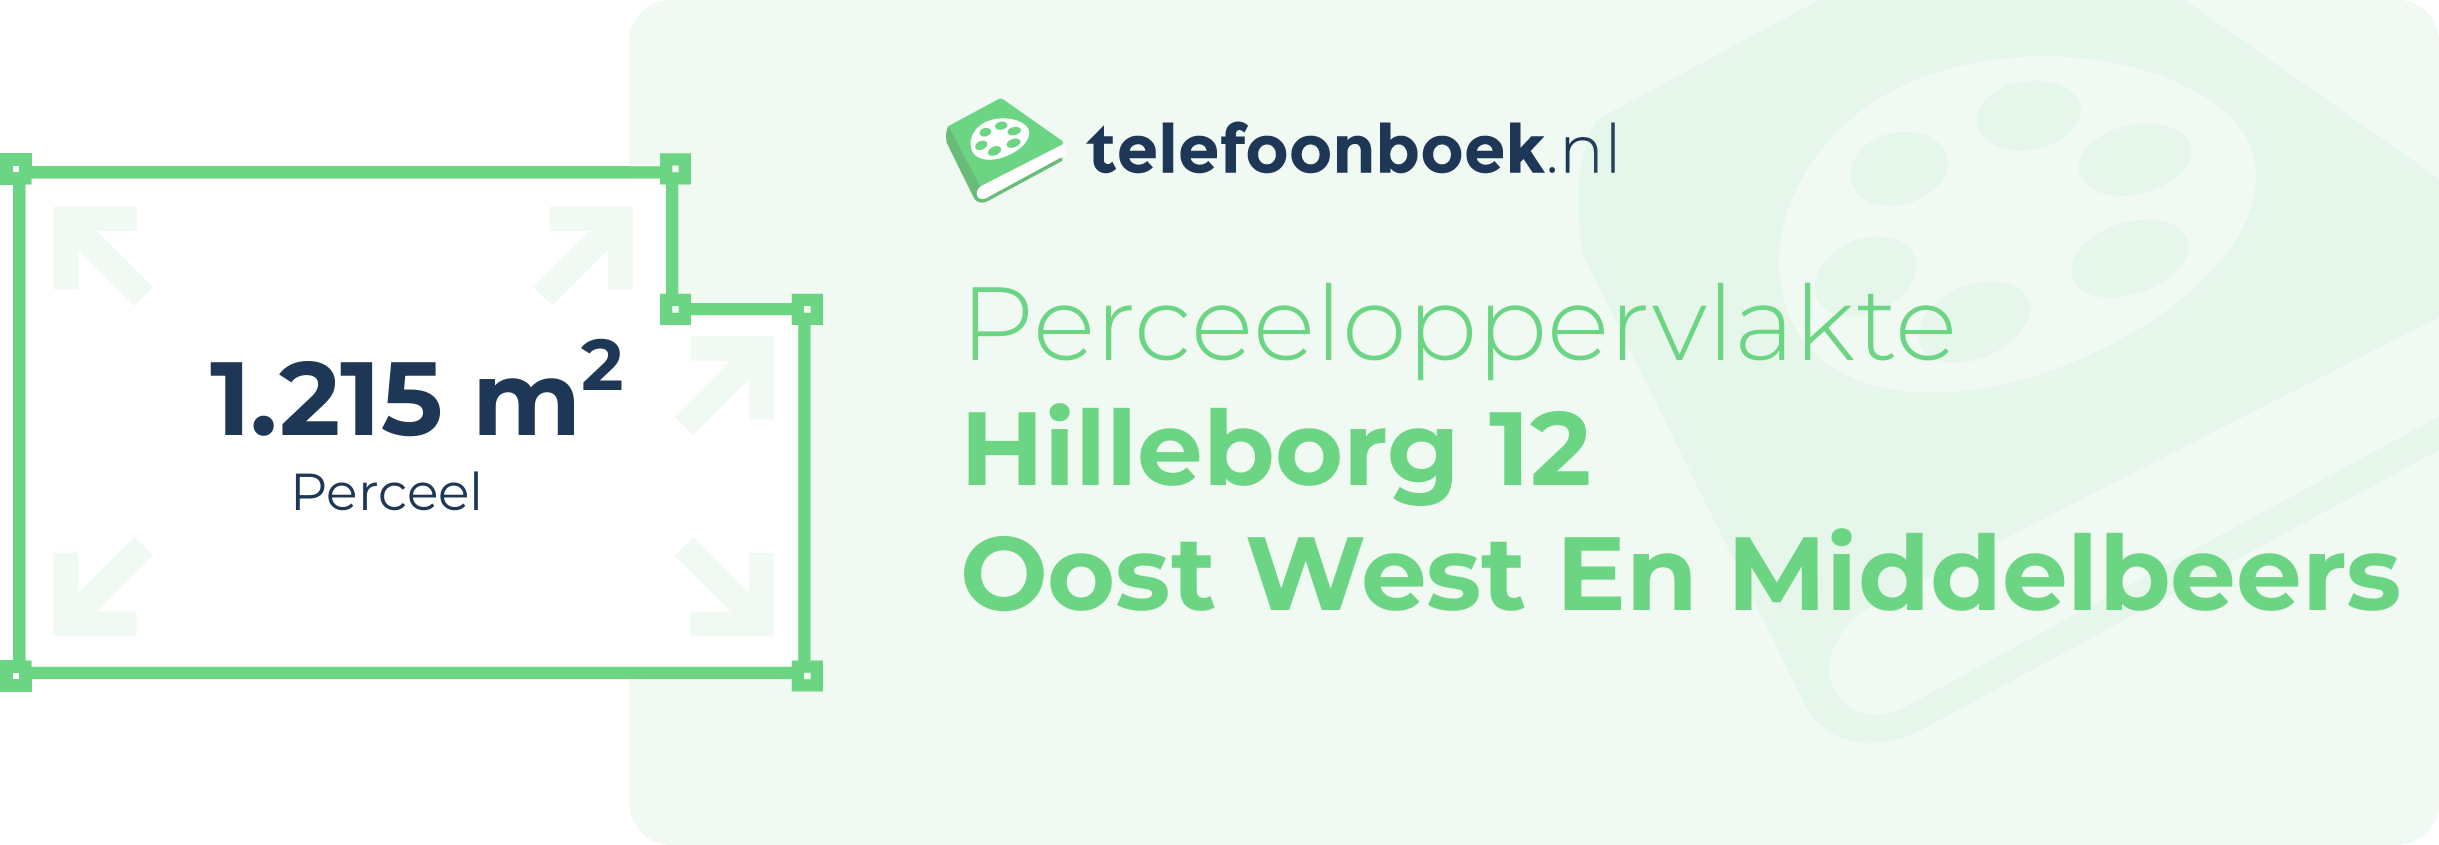 Perceeloppervlakte Hilleborg 12 Oost West En Middelbeers